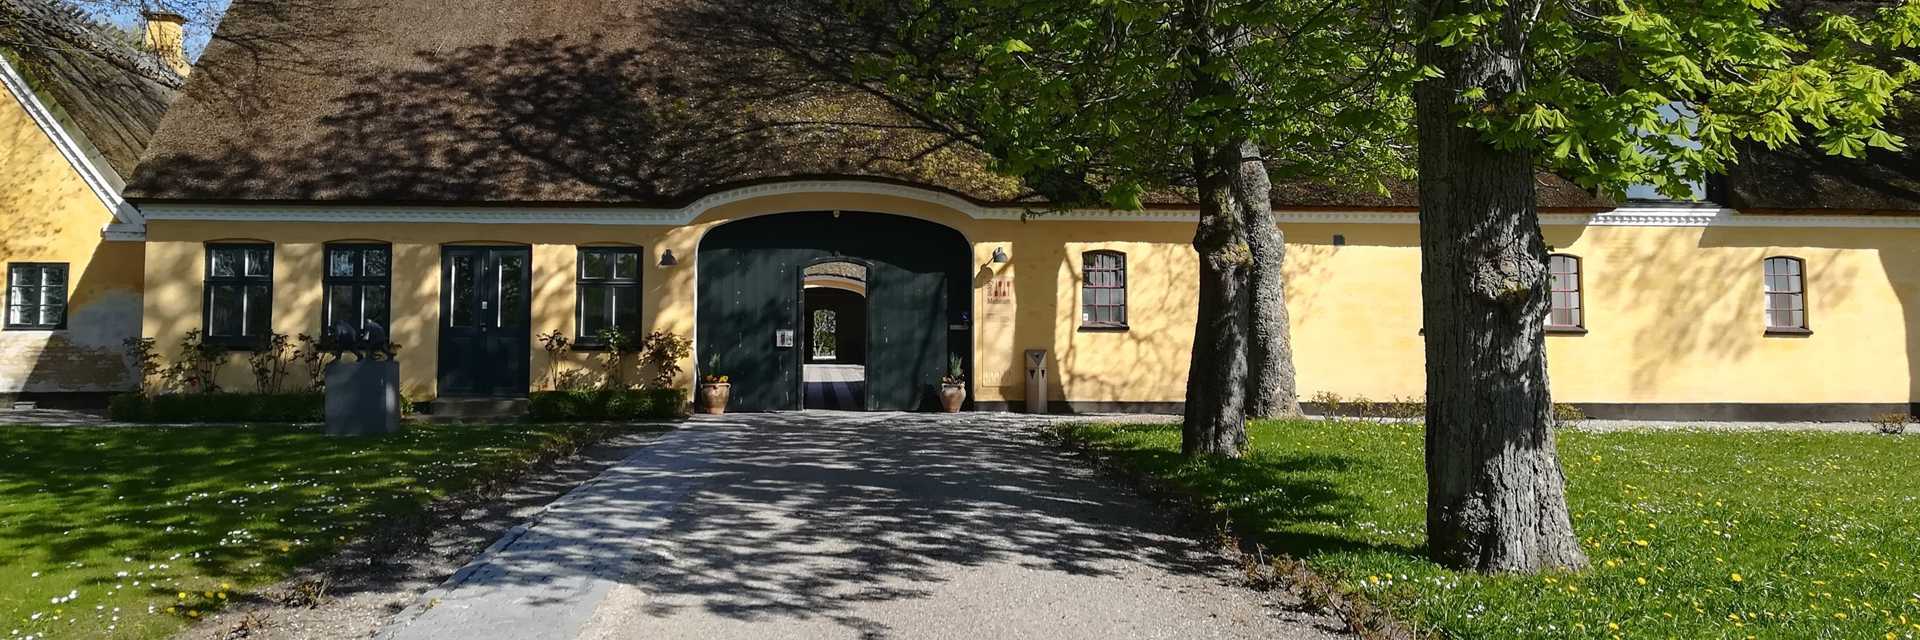 Grevegård, hvor Greve Museum, er placeret, er en smuk gammel hedebogård med stråtækt tag og gul facade